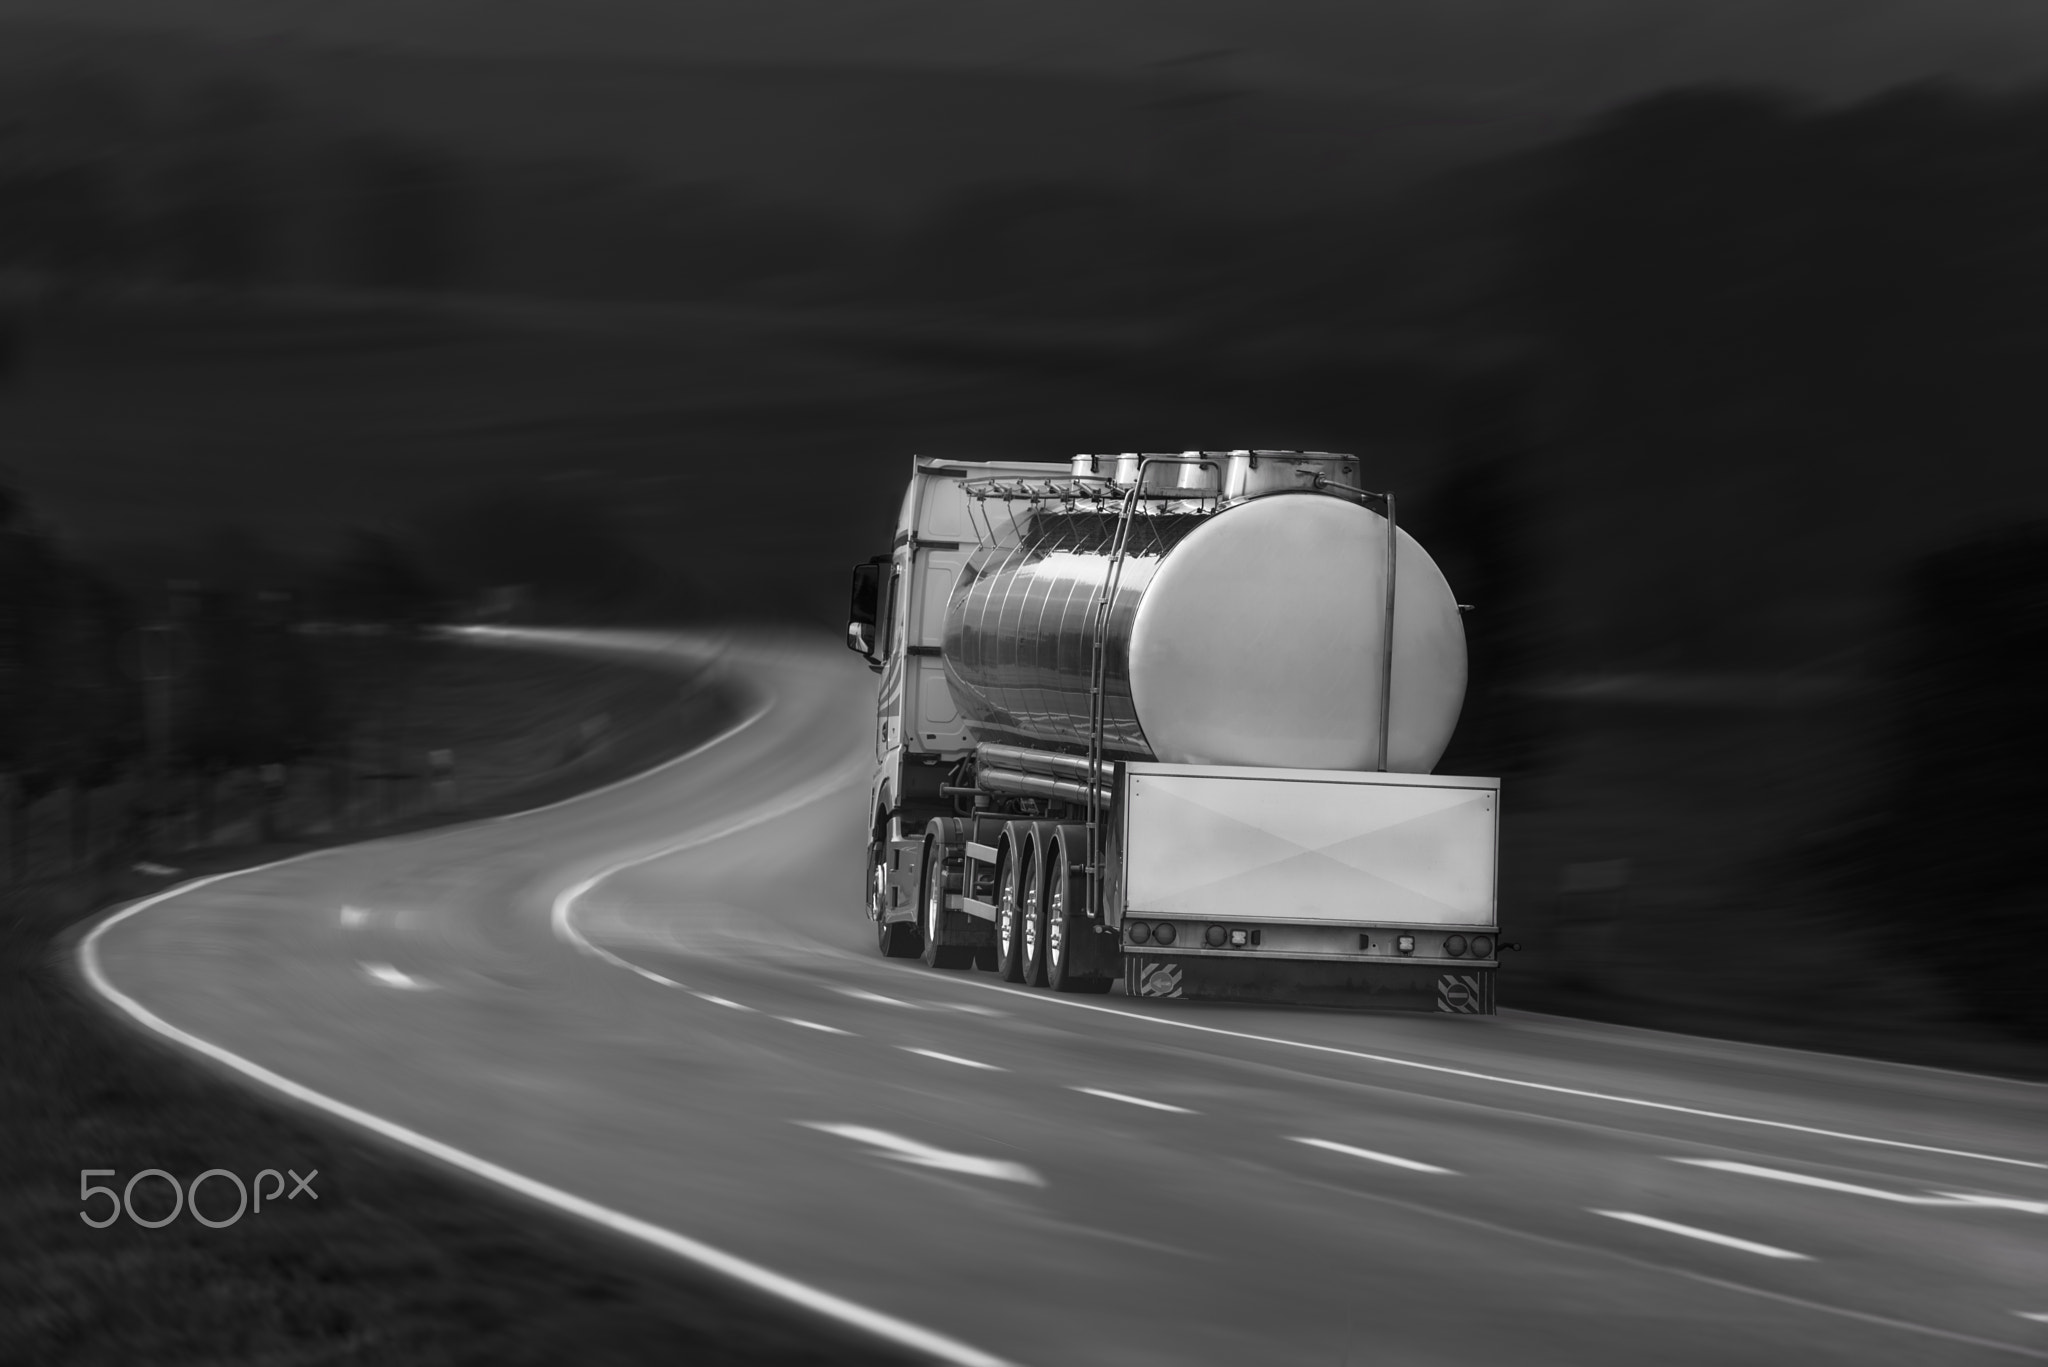 Tanker truck in motion